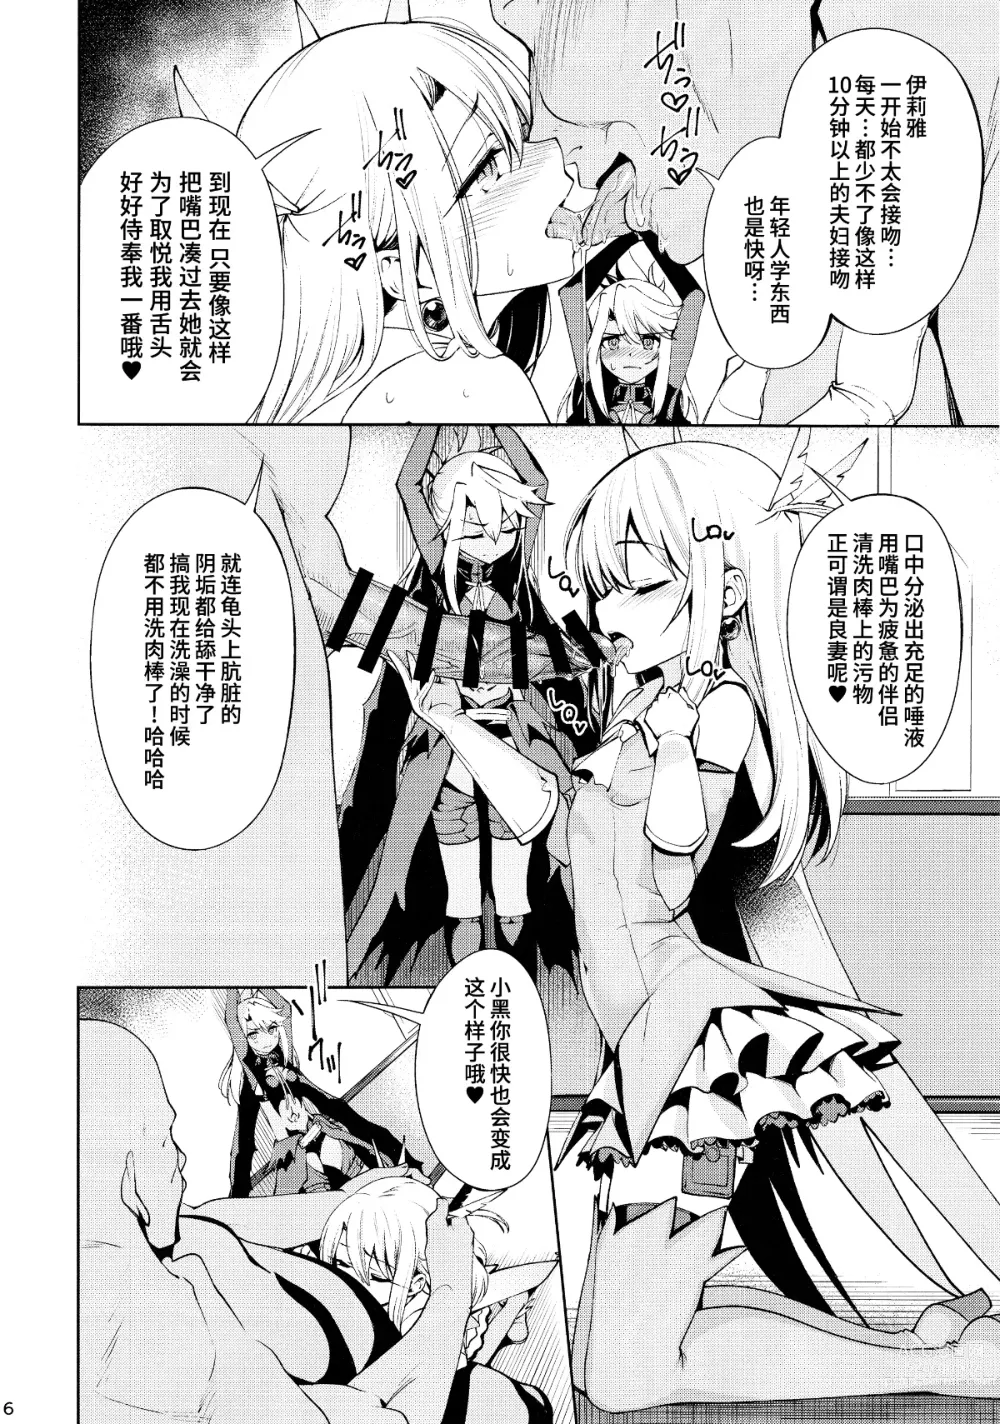 Page 6 of doujinshi 魔法少女催眠パコパコーズ2